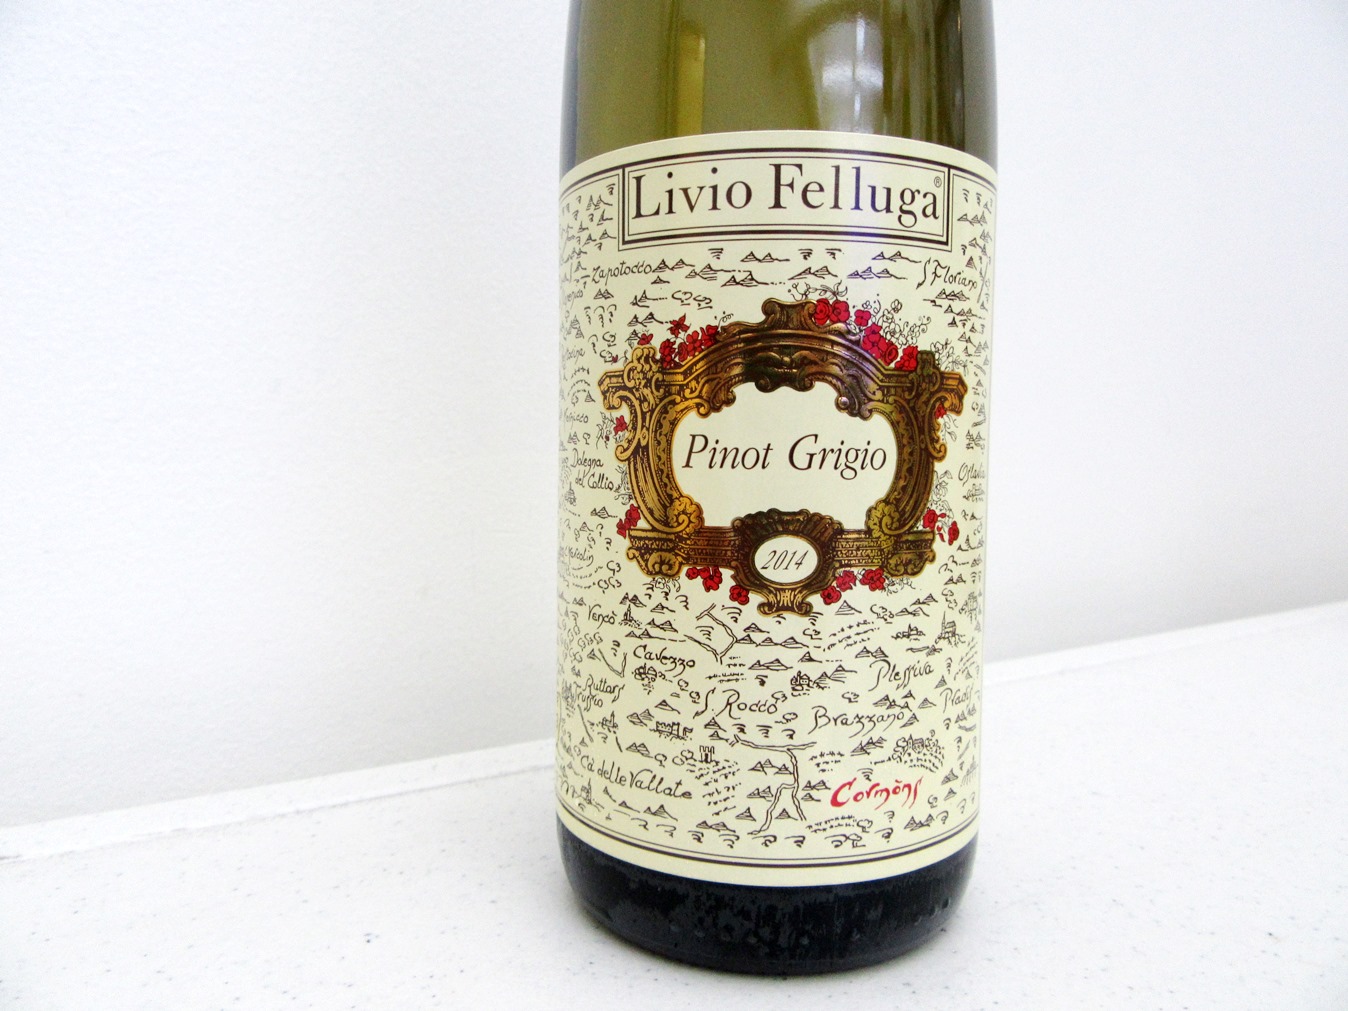 Livio Felluga, Pinot Grigio 2014, Collio, Friuli-Venezia Giulia, Italy, Wine Casual